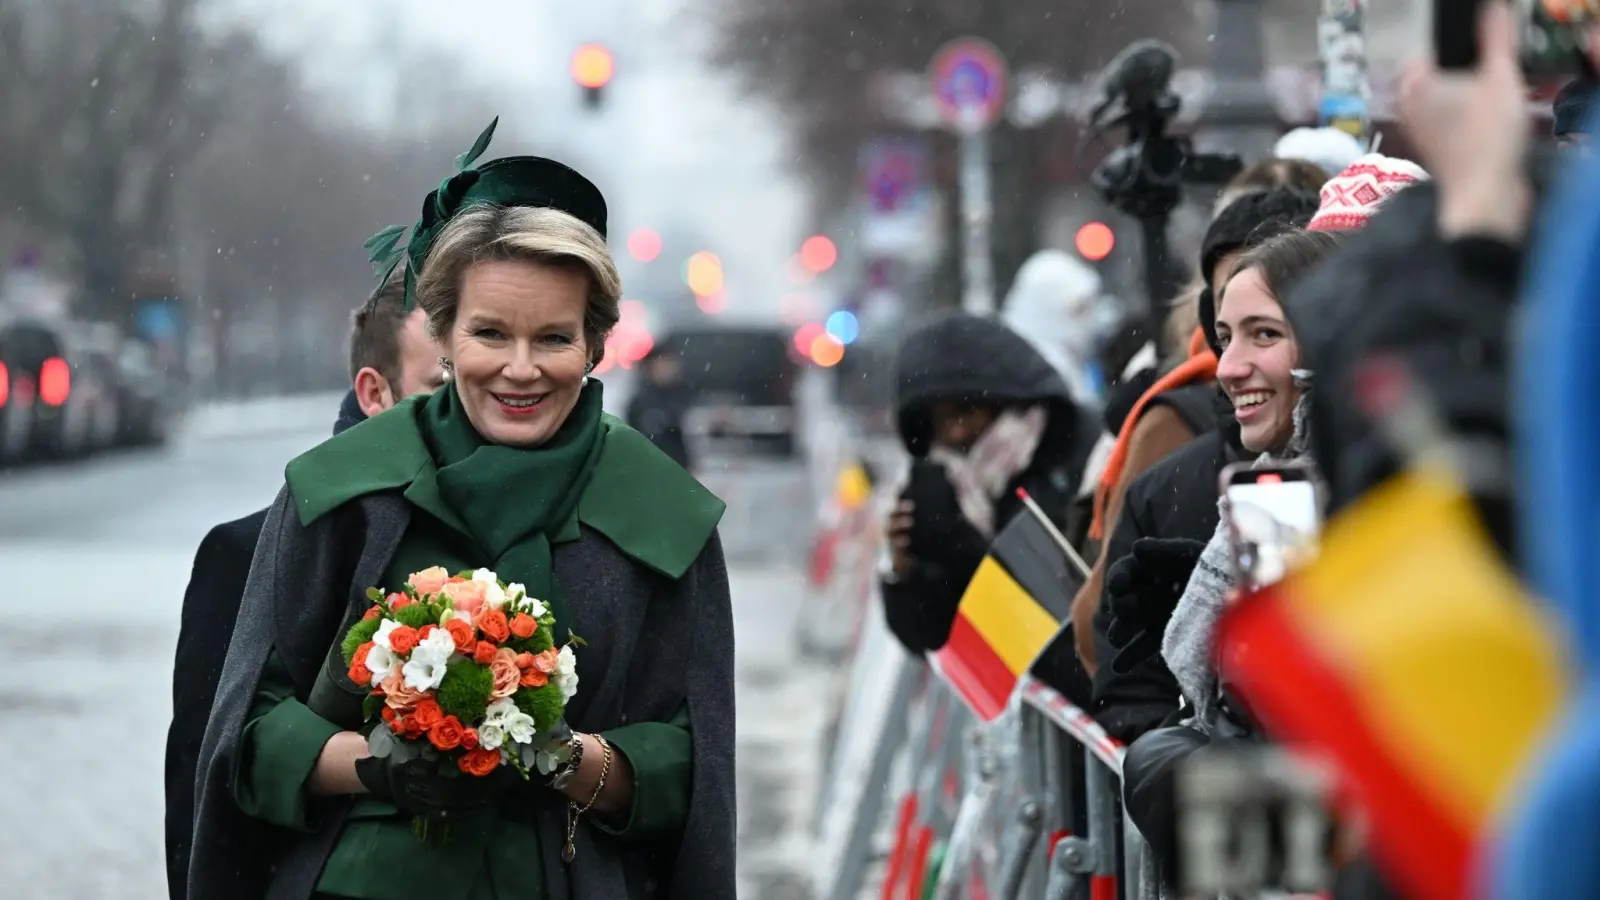 Königin Mathilde von Belgien wird von wartenden Zuschauern mit belgischen Fähnchen am Brandenburger Tor begrüßt. Das belgische Königspaar ist zu einem dreitägigen Staatsbesuch nach Deutschland gekommen. (Foto: Jens Kalaene/dpa)